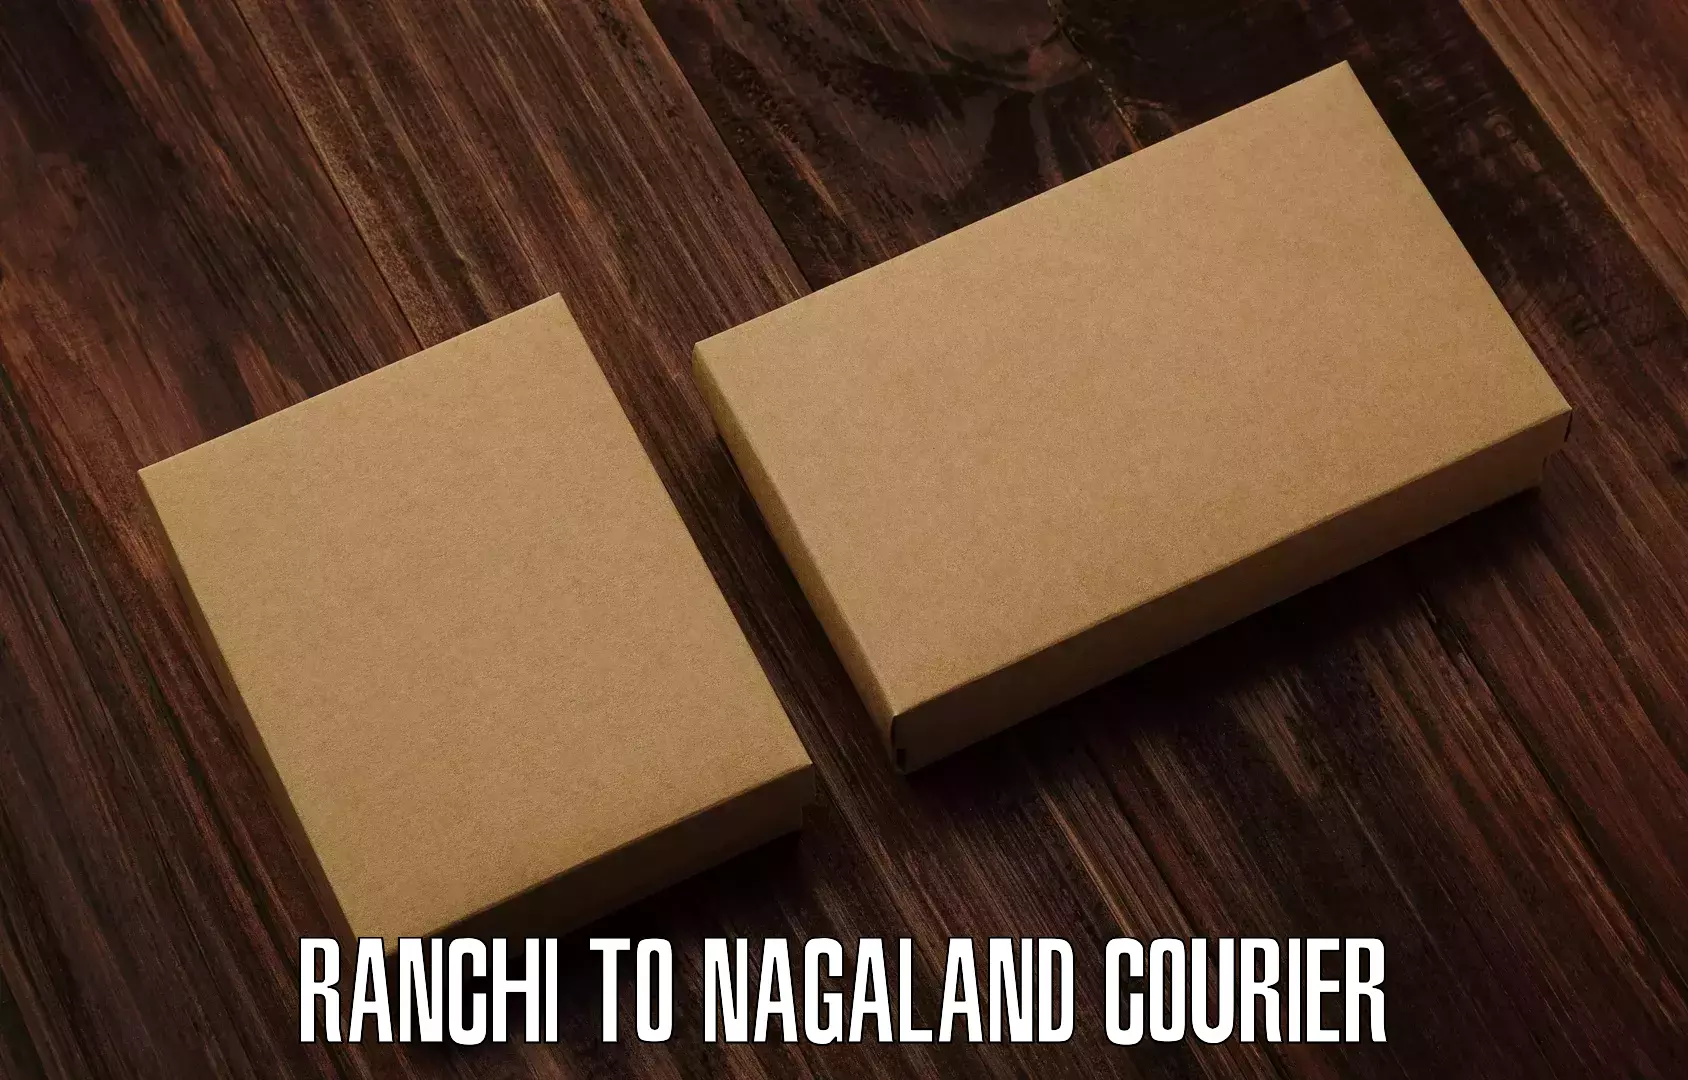 Efficient parcel service Ranchi to Mon